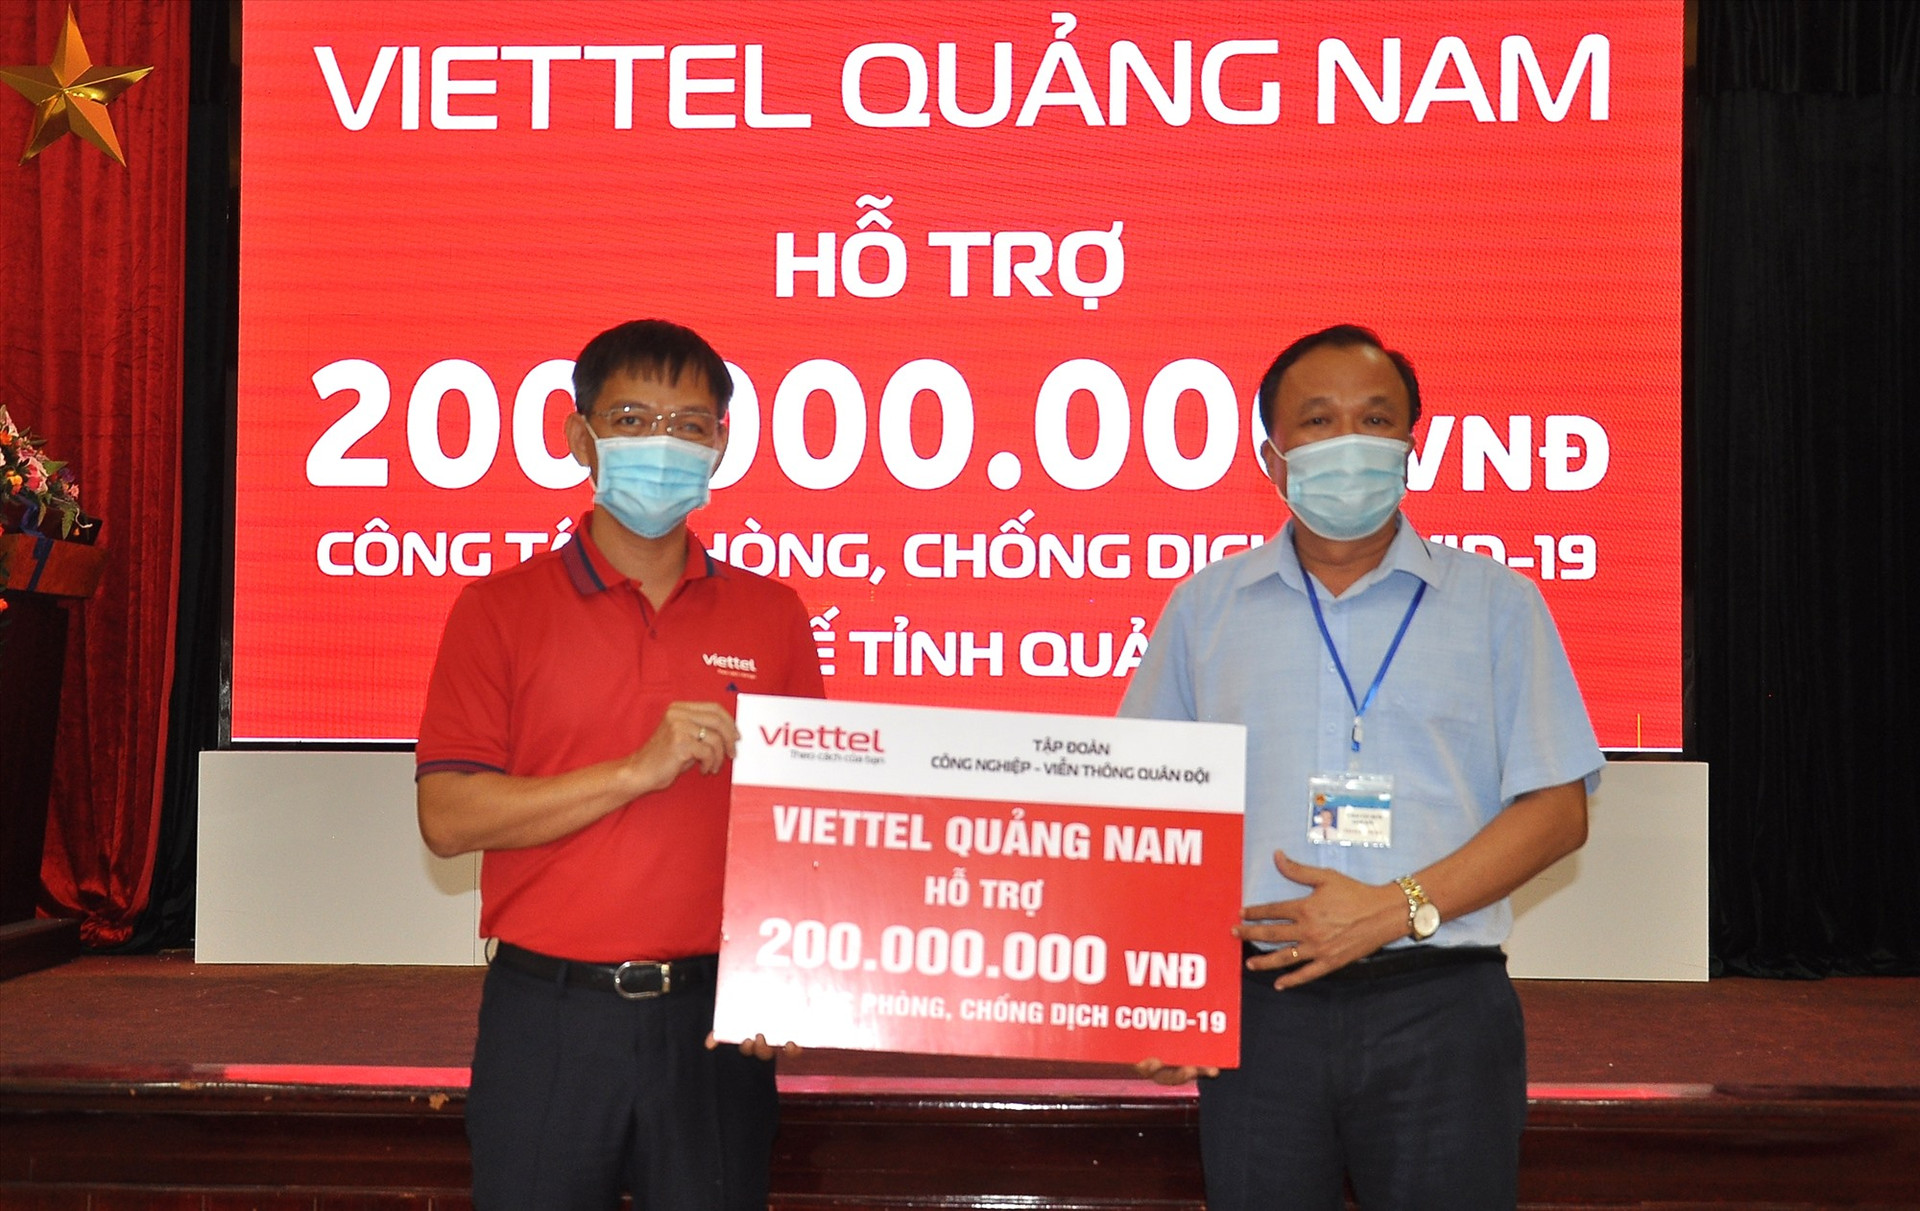 Viettel Quảng Nam trao 200 triệu đồng cho công tác phòng chống dịch Covid-19 thông qua Sở Y tế Quảng Nam. Ảnh: V.A